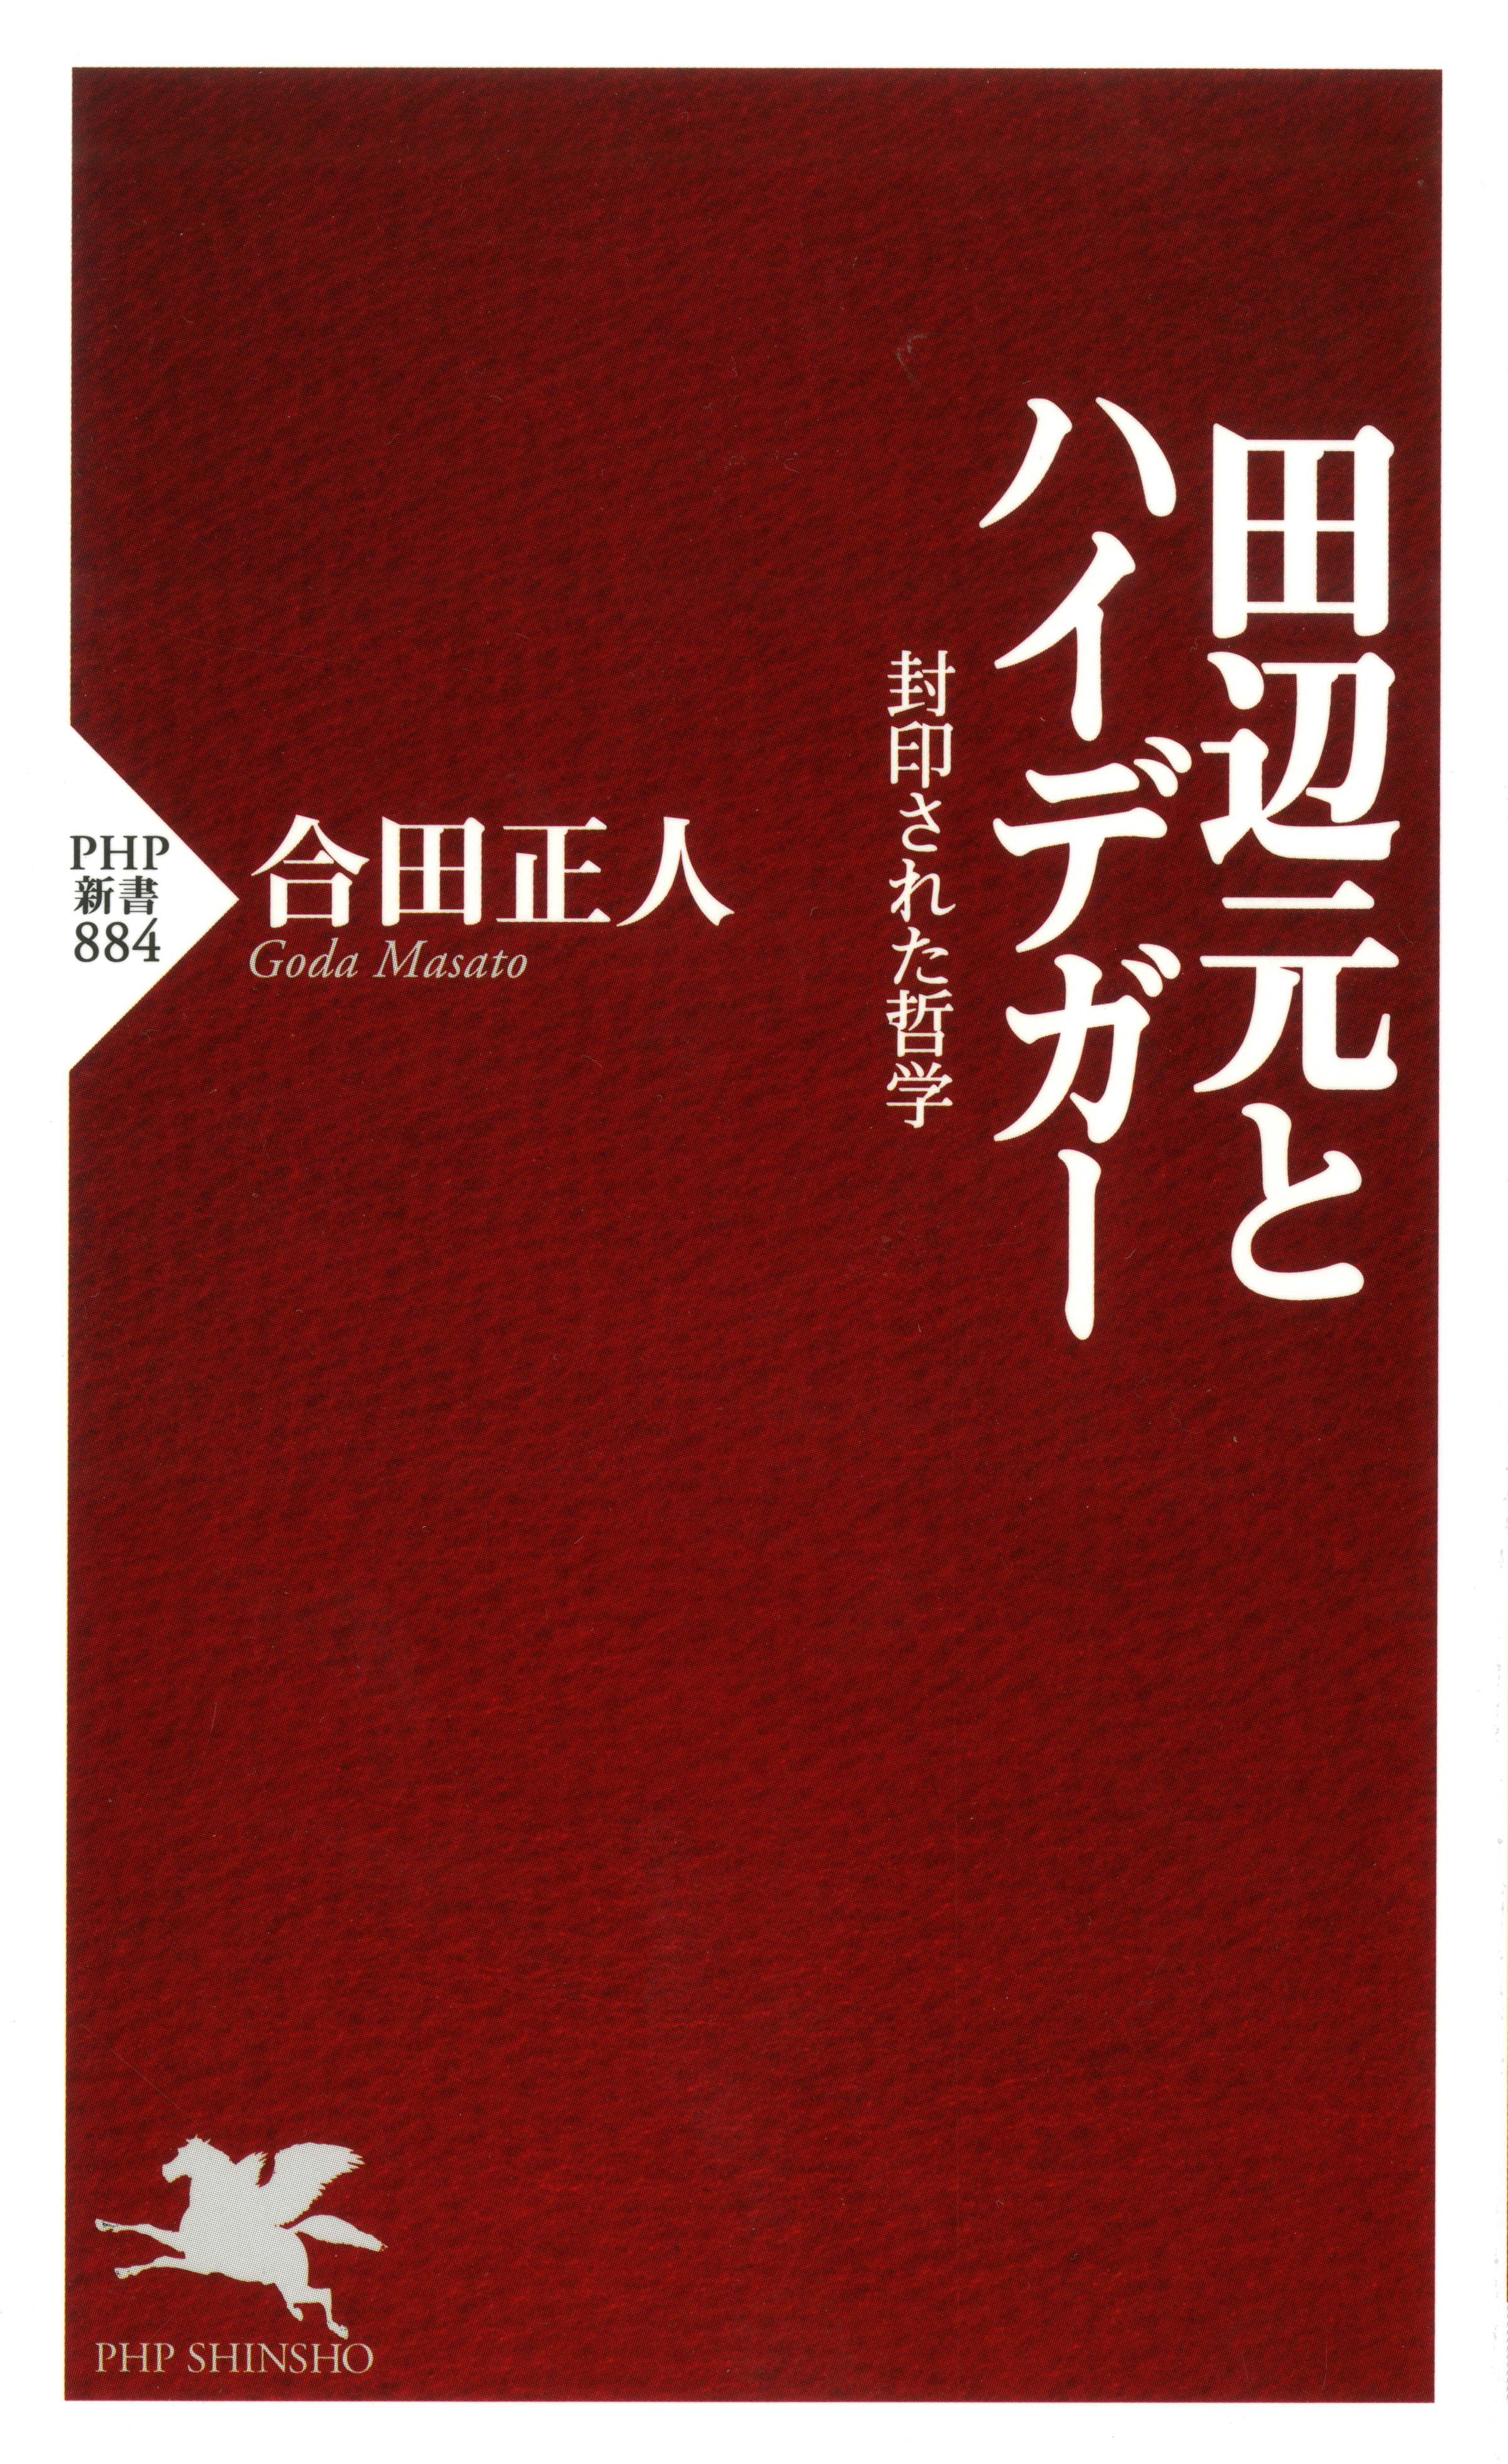 田辺元とハイデガー 1巻(書籍) - 電子書籍 | U-NEXT 初回600円分無料